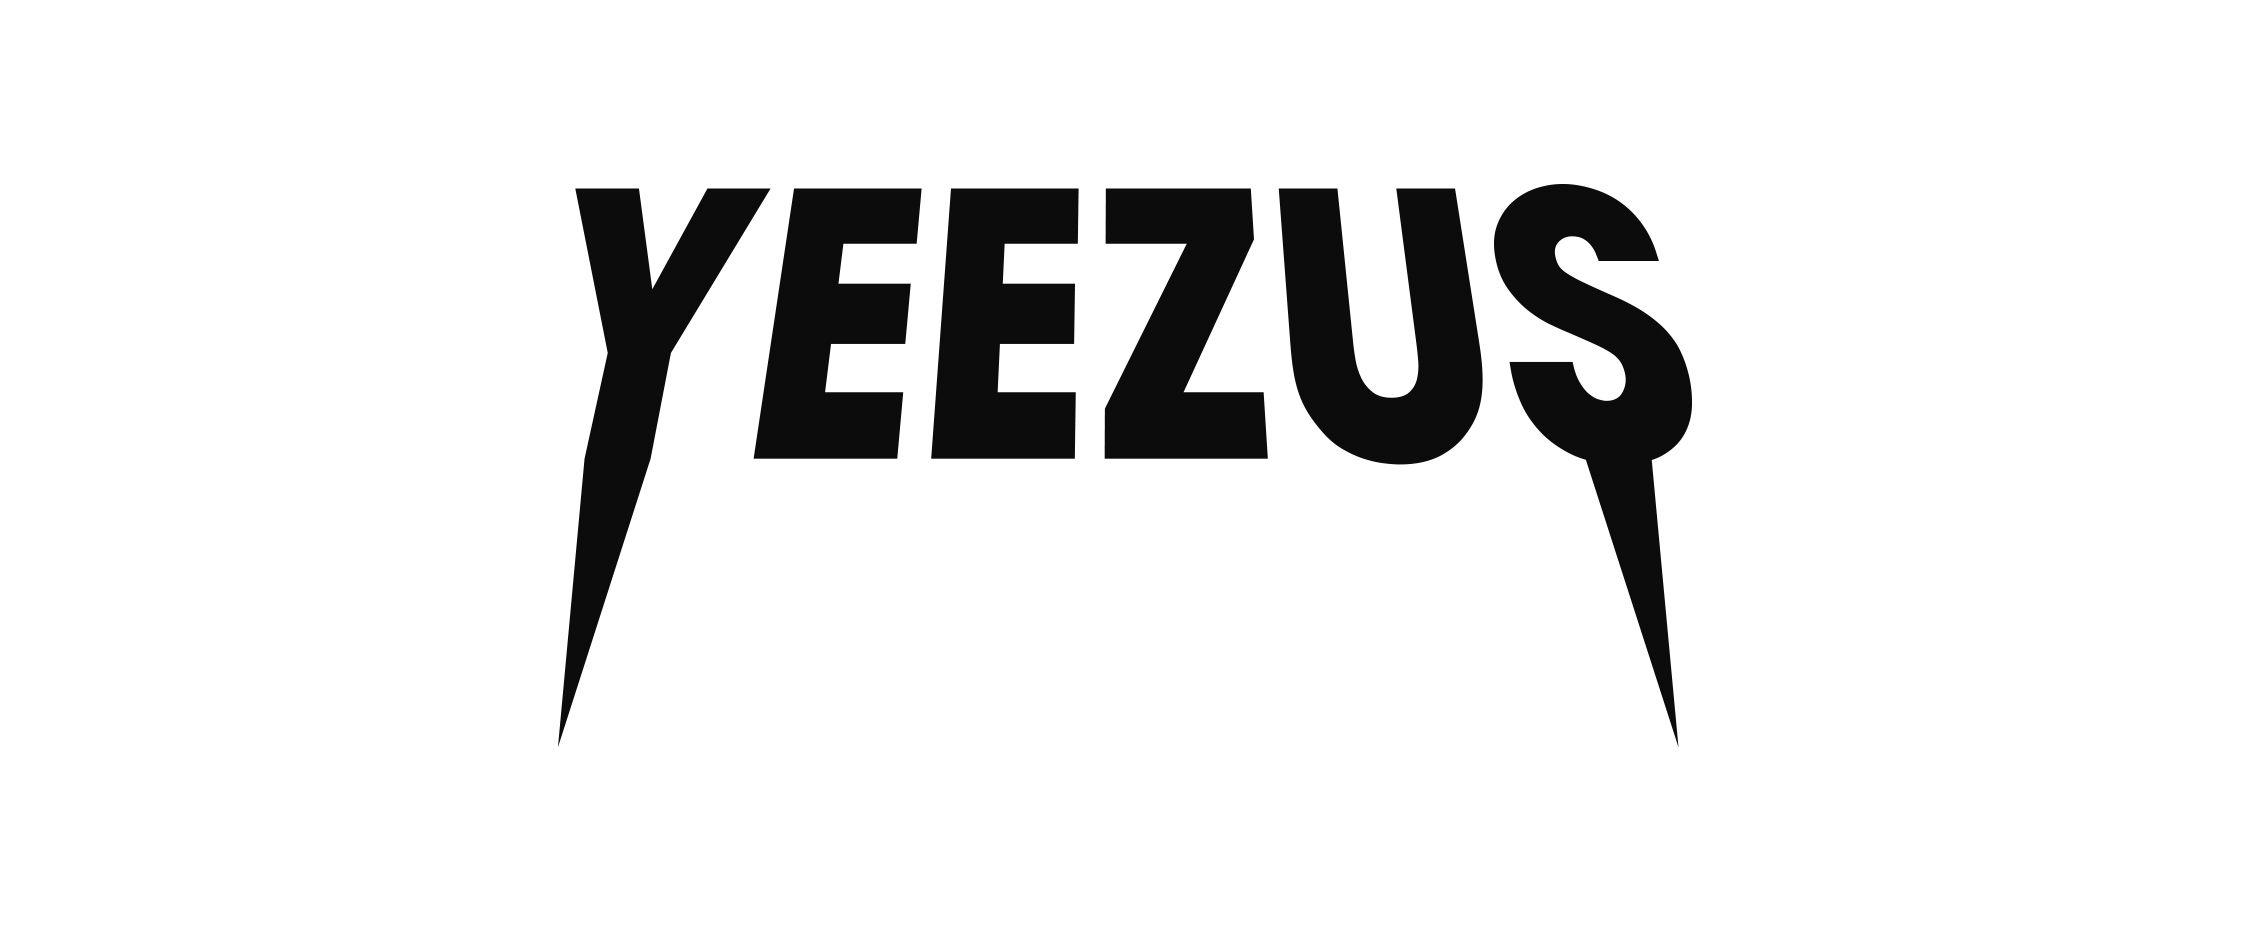 Kanye West Logo - YEEZUS | Kanye | Logos, Kanye west, Stickers